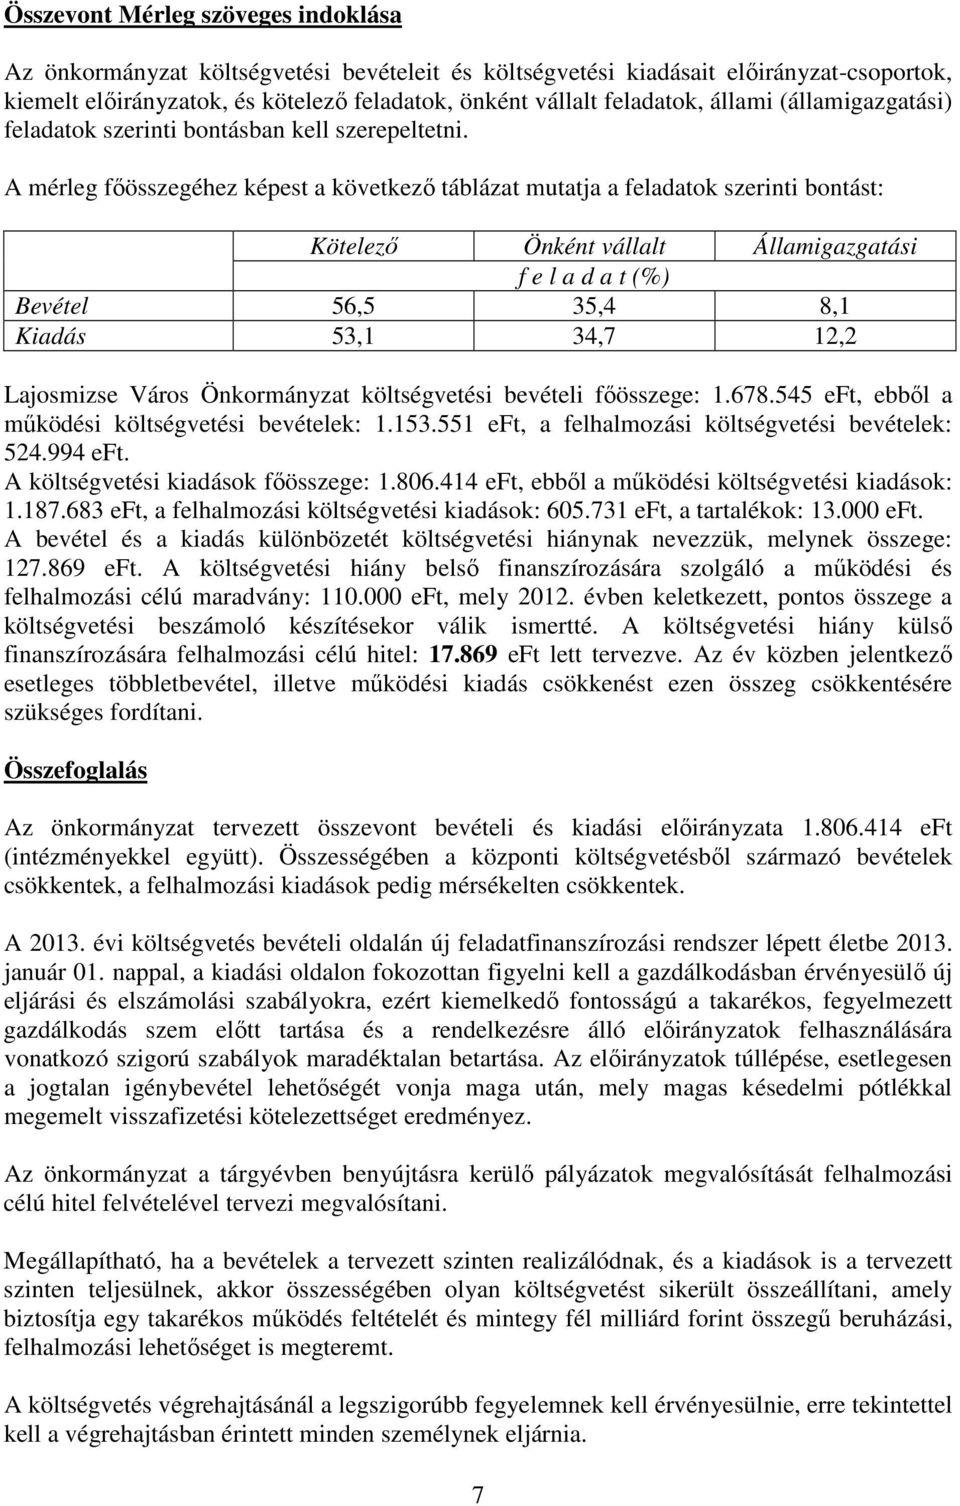 A mérleg fıösszegéhez képest a következı táblázat mutatja a feladatok szerinti bontást: Kötelezı Önként vállalt Államigazgatási f e l a d a t (%) Bevétel 56,5 35,4 8,1 Kiadás 53,1 34,7 12,2